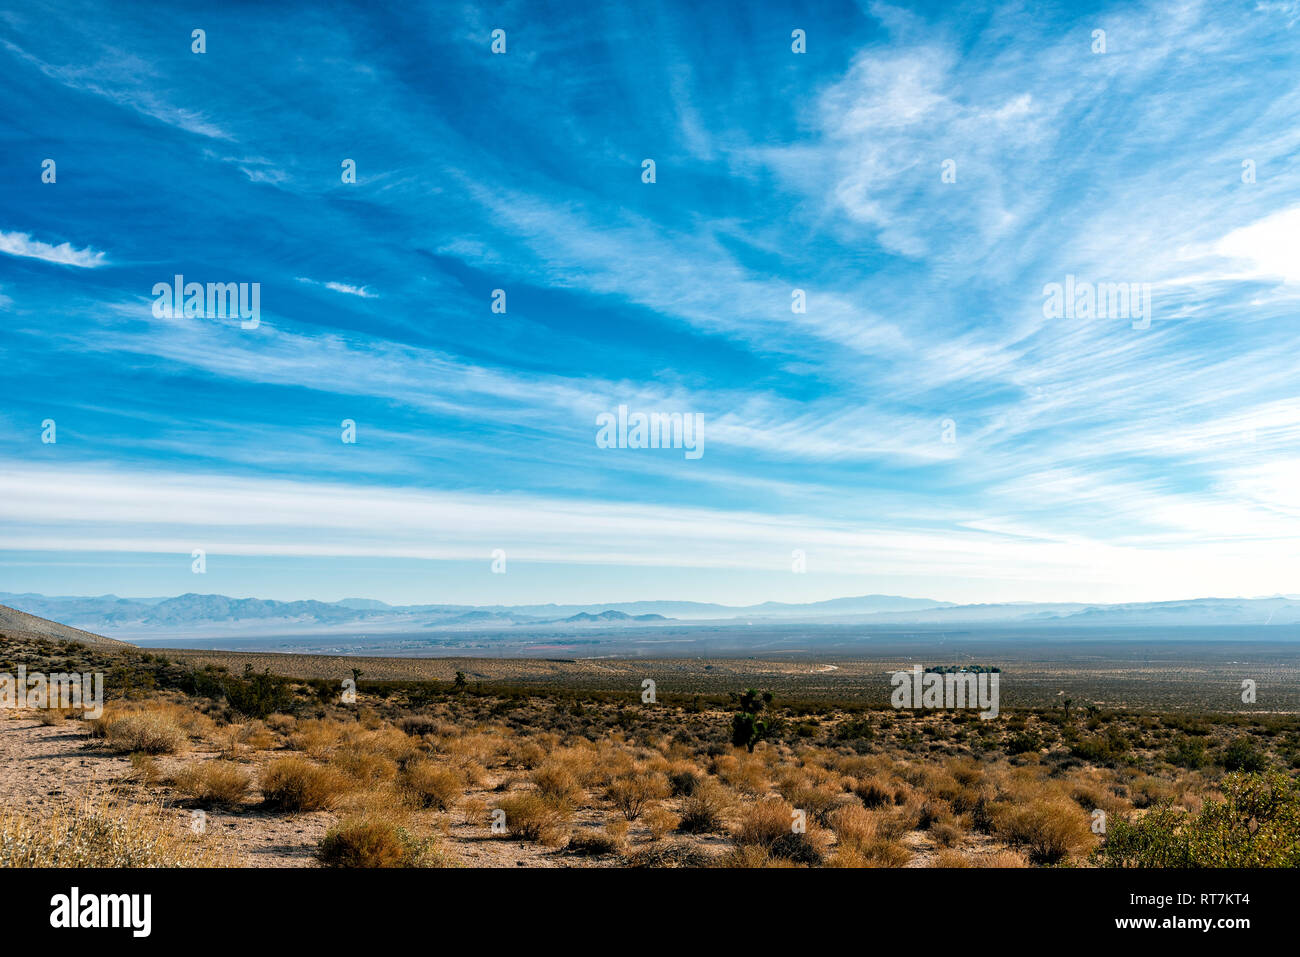 Wüste Tallandschaft mit Dunstige Berge unter strahlend blauen Himmel mit weißen Wolken. Stockfoto